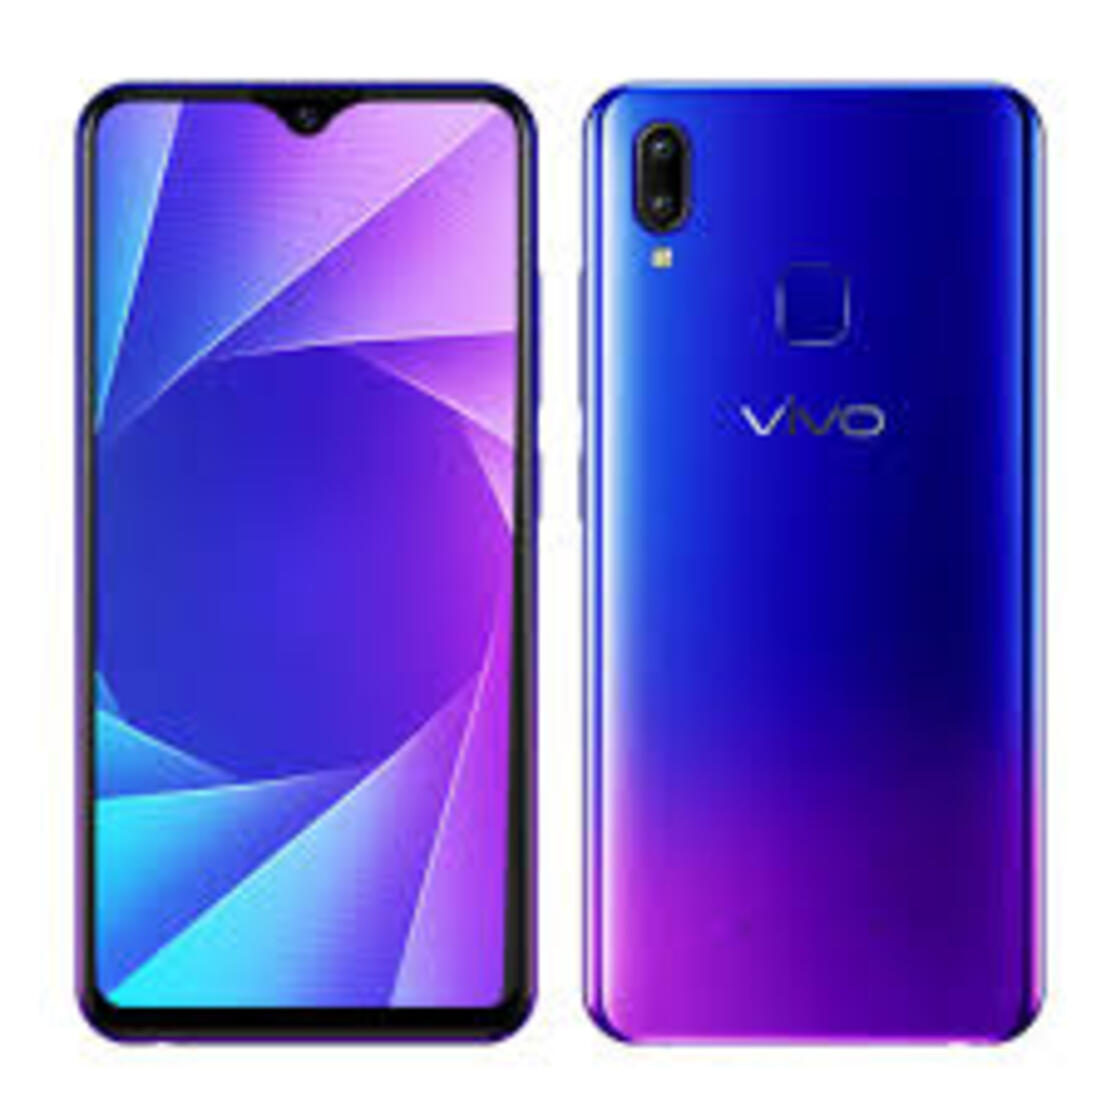 điện thoại Vivo Y95 2sim ram 6G bộ nhớ 128G máy Chính Hãng, Màn hình: IPS-LCD kích thước 6.22 inch,...